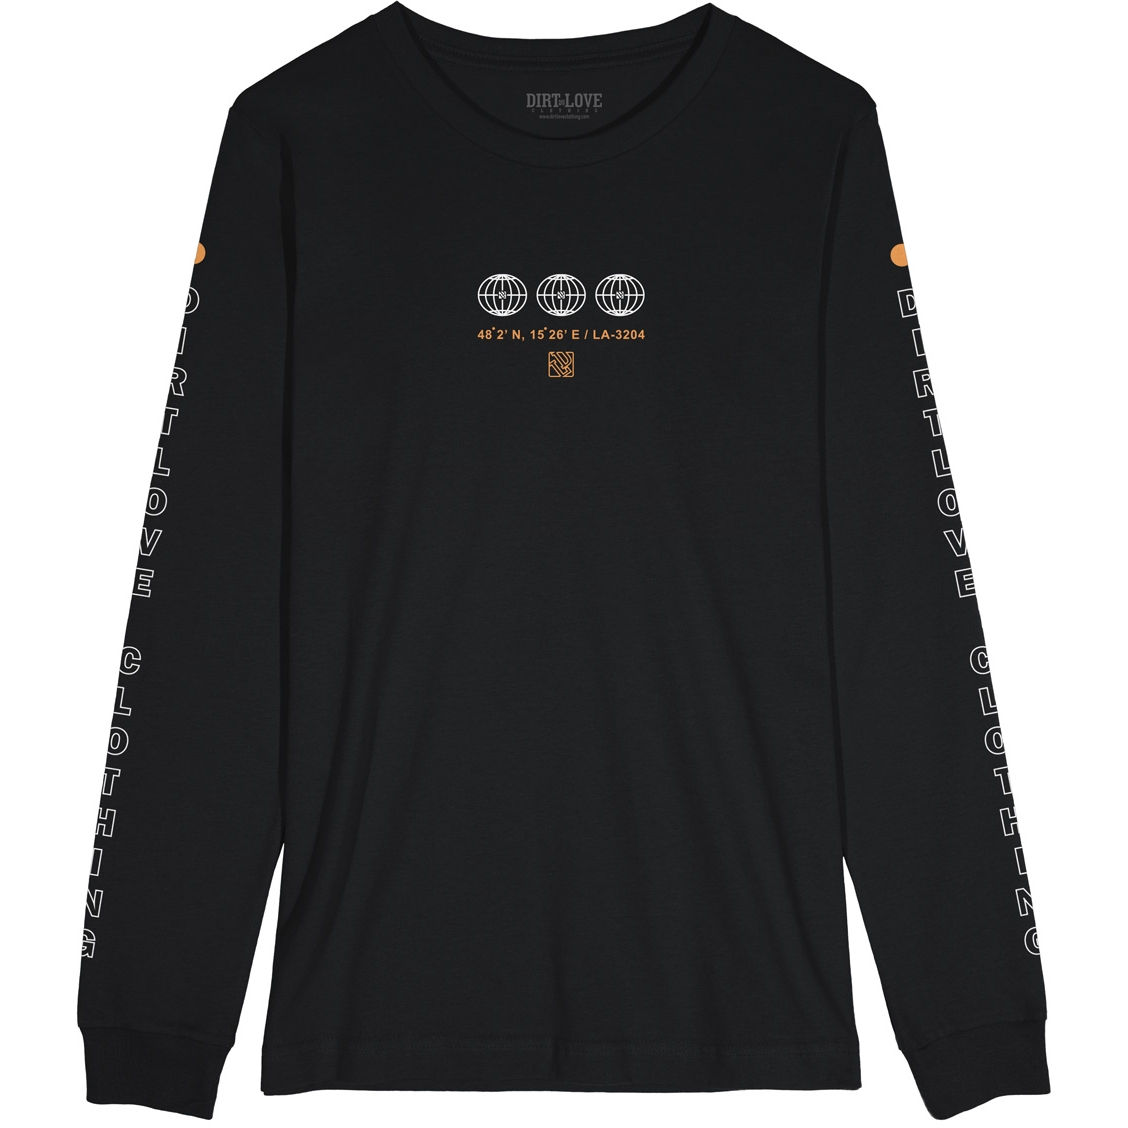 Productfoto van Dirt Love Habitat Longsleeve T-Shirt - black